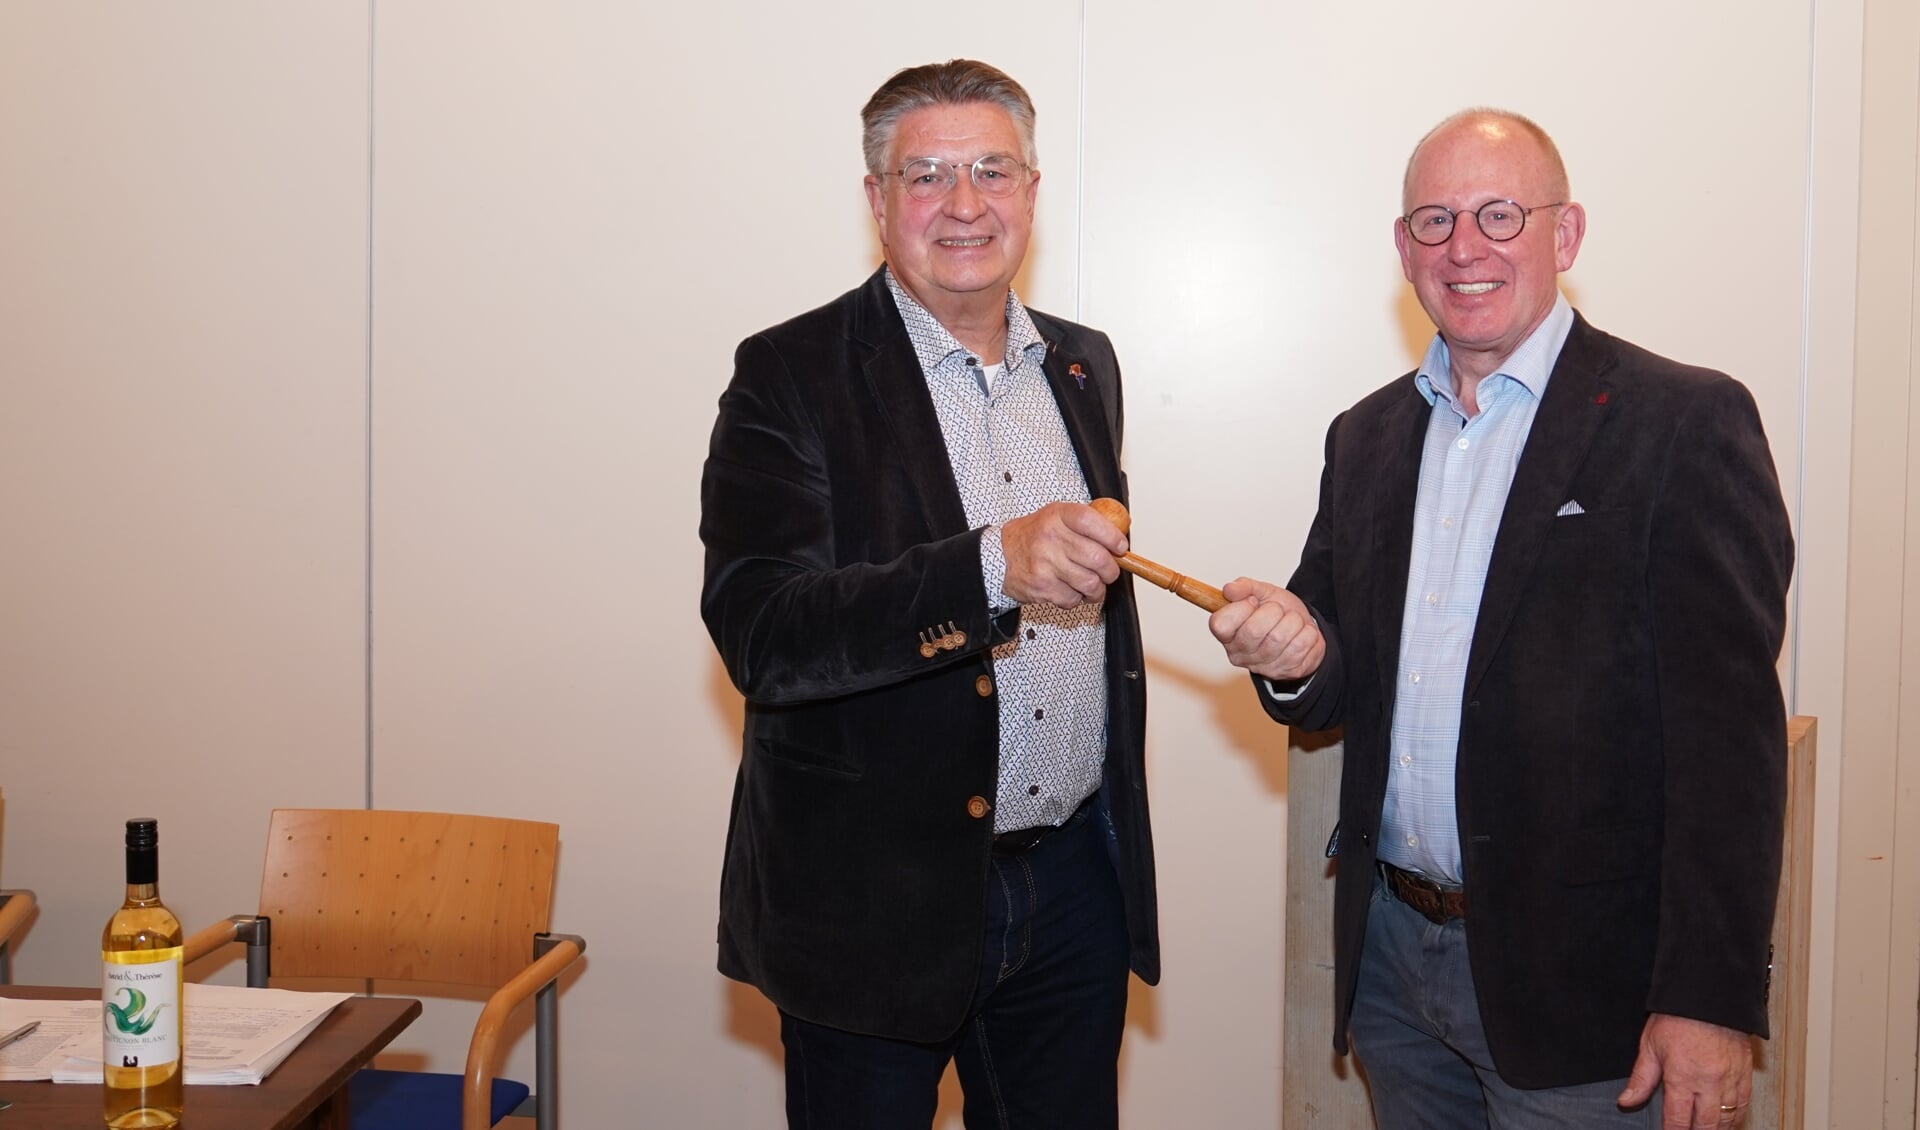 De overdracht van de voorzittershamer van het OFD door Gerrit van Veen (links) aan Henk Hartemink. Foto: Frank Vinkenvleugel